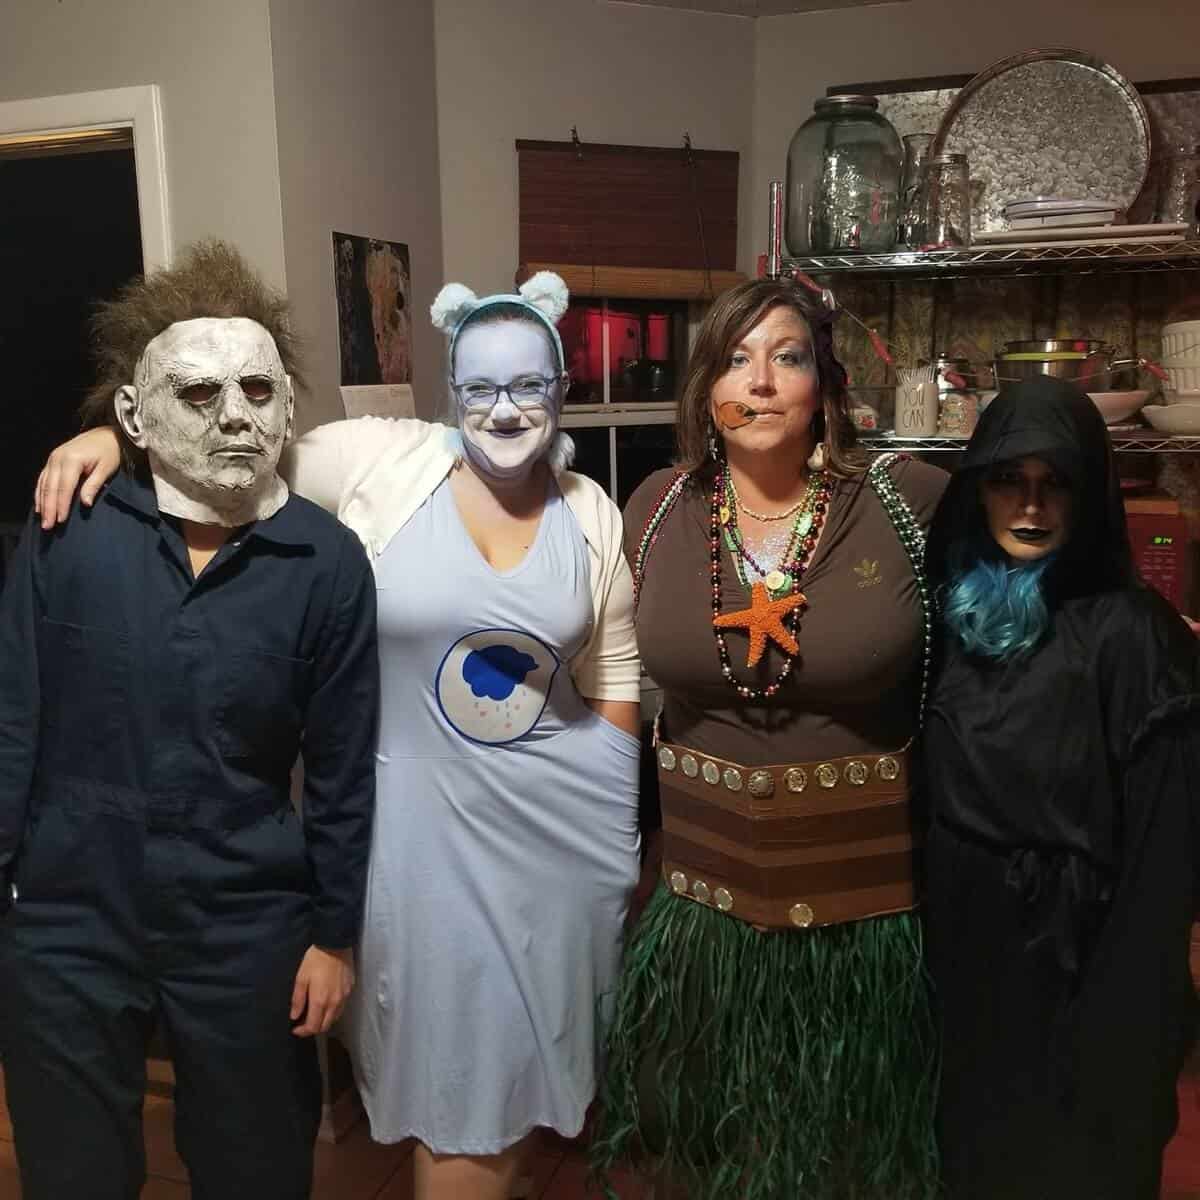 friends in halloween costumes